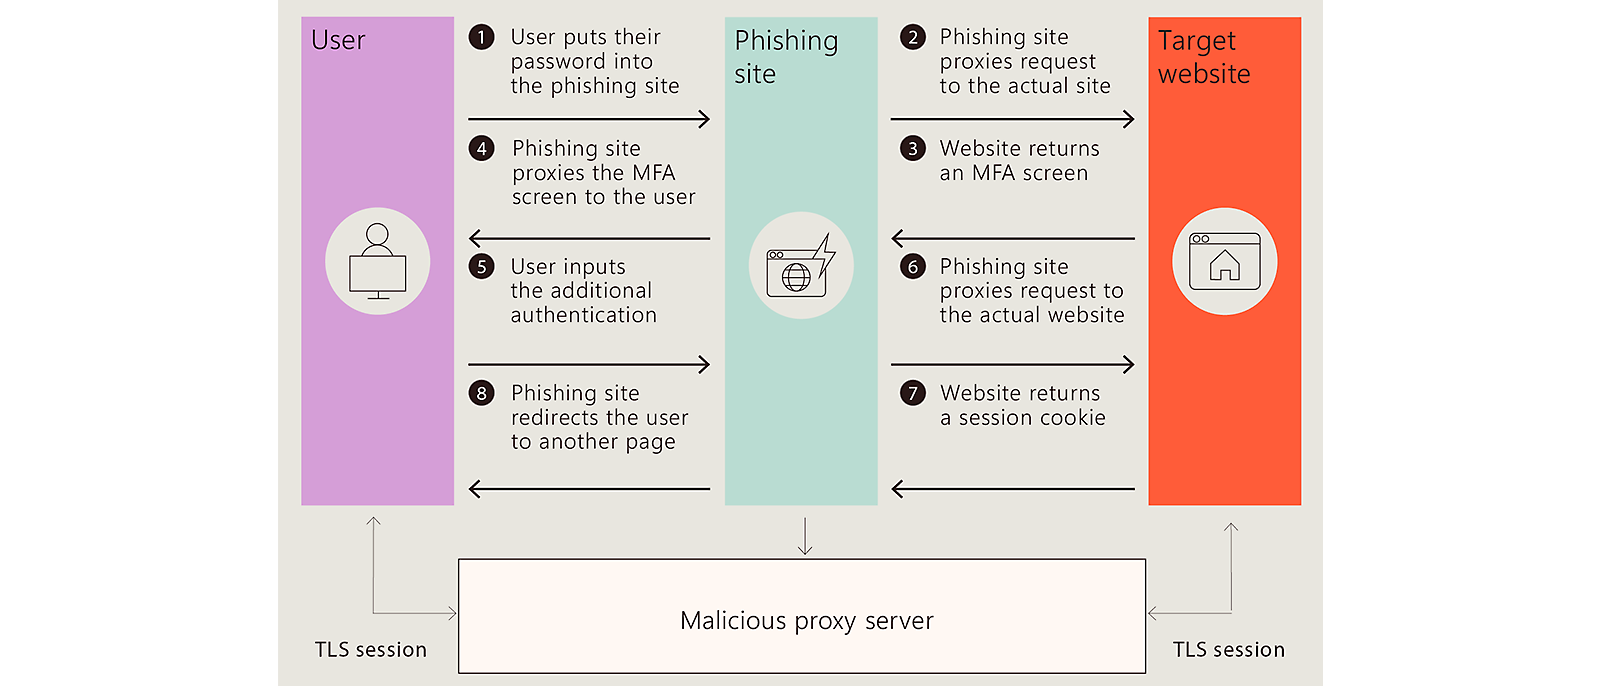 Cenário de phishing: Os usuários digitam a senha, MFA, são redirecionados; o proxy malicioso é envolvido